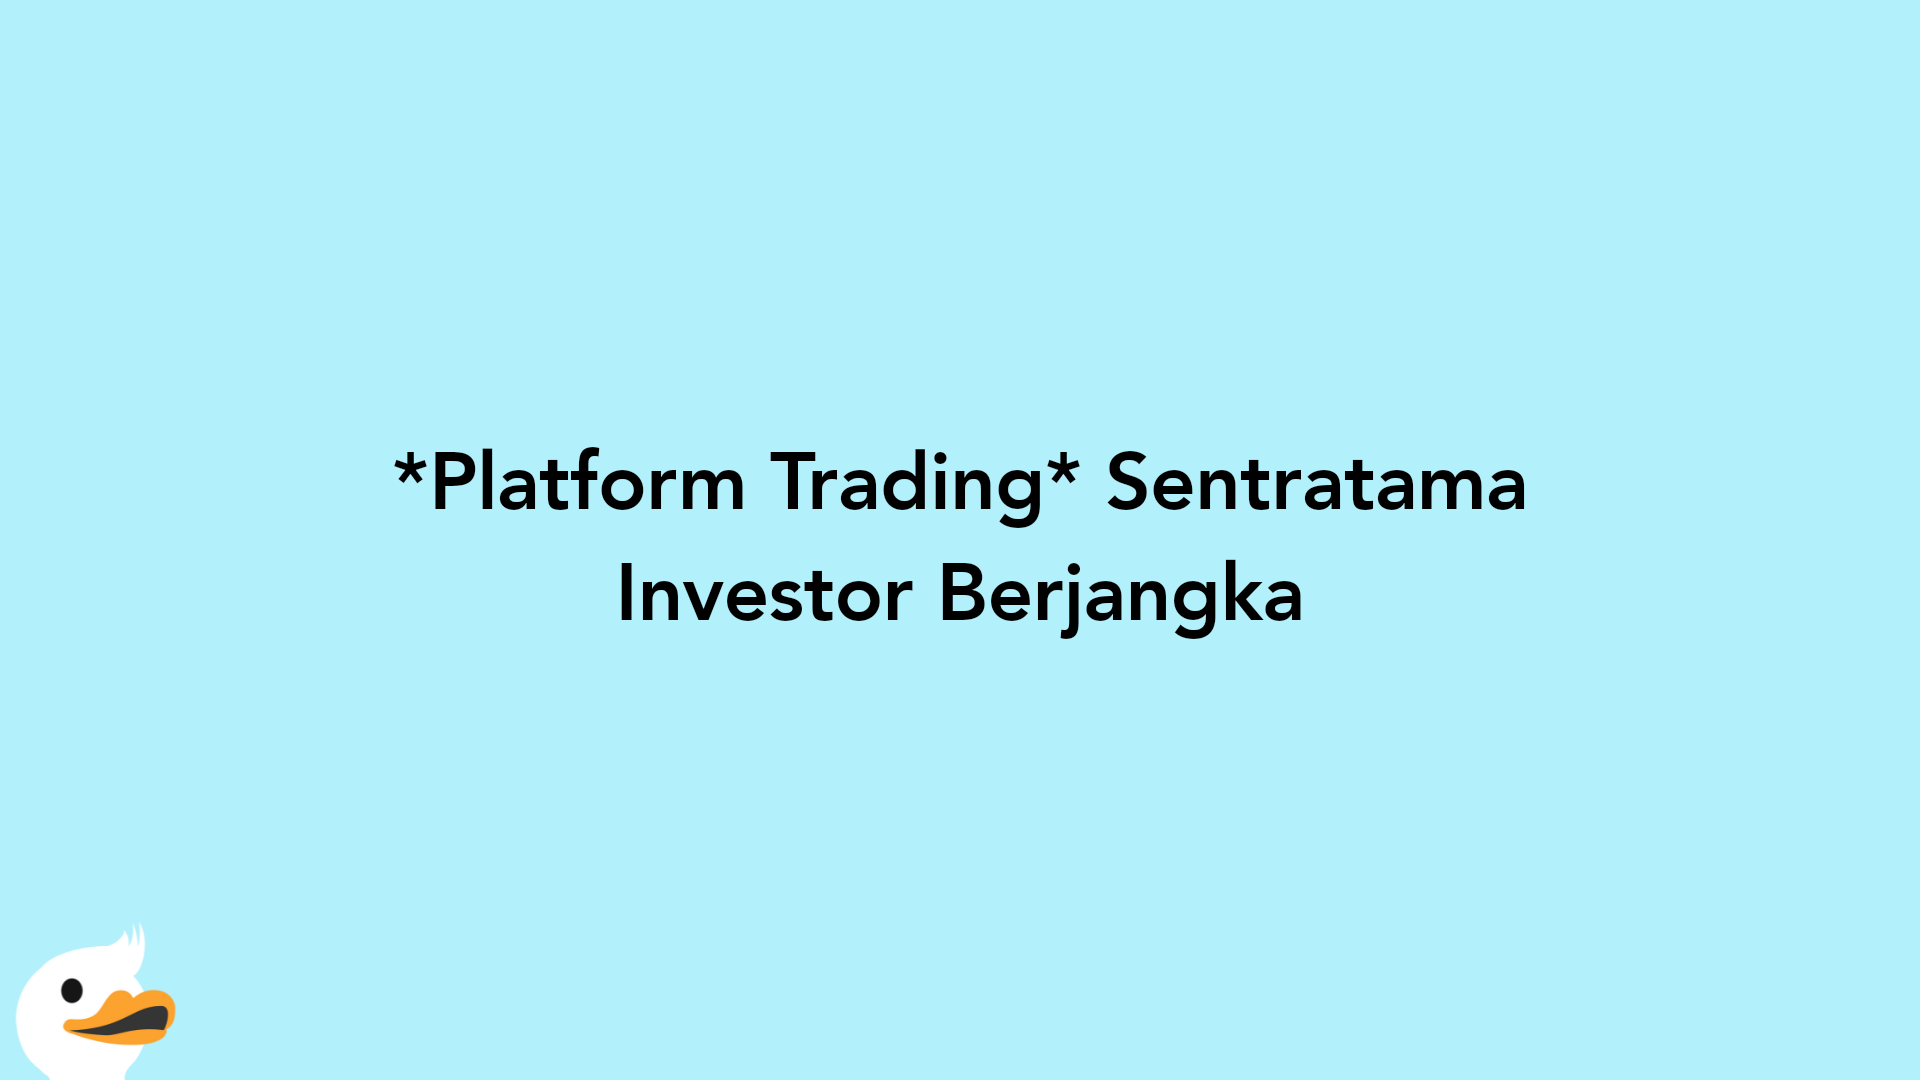 Platform Trading Sentratama Investor Berjangka